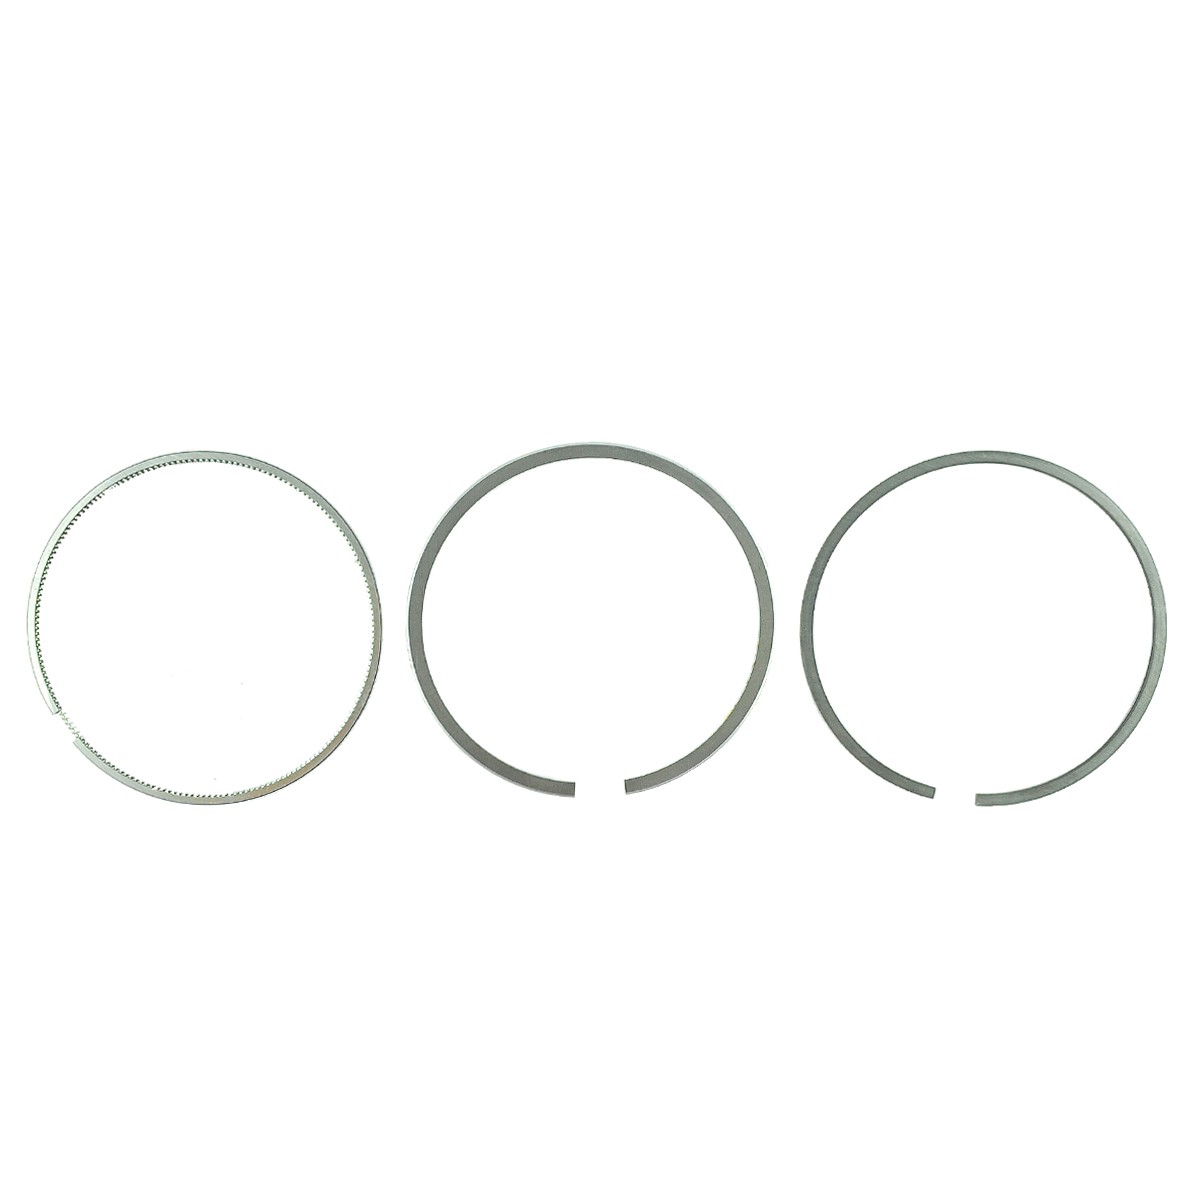 Piston rings / Ø 75 mm / Yanmar 3T75 / Yanmar F16/YM140/YM142/YM147/YM164/YM220/YM226/YM1601/YM1602/YM1610 / 721575-22500